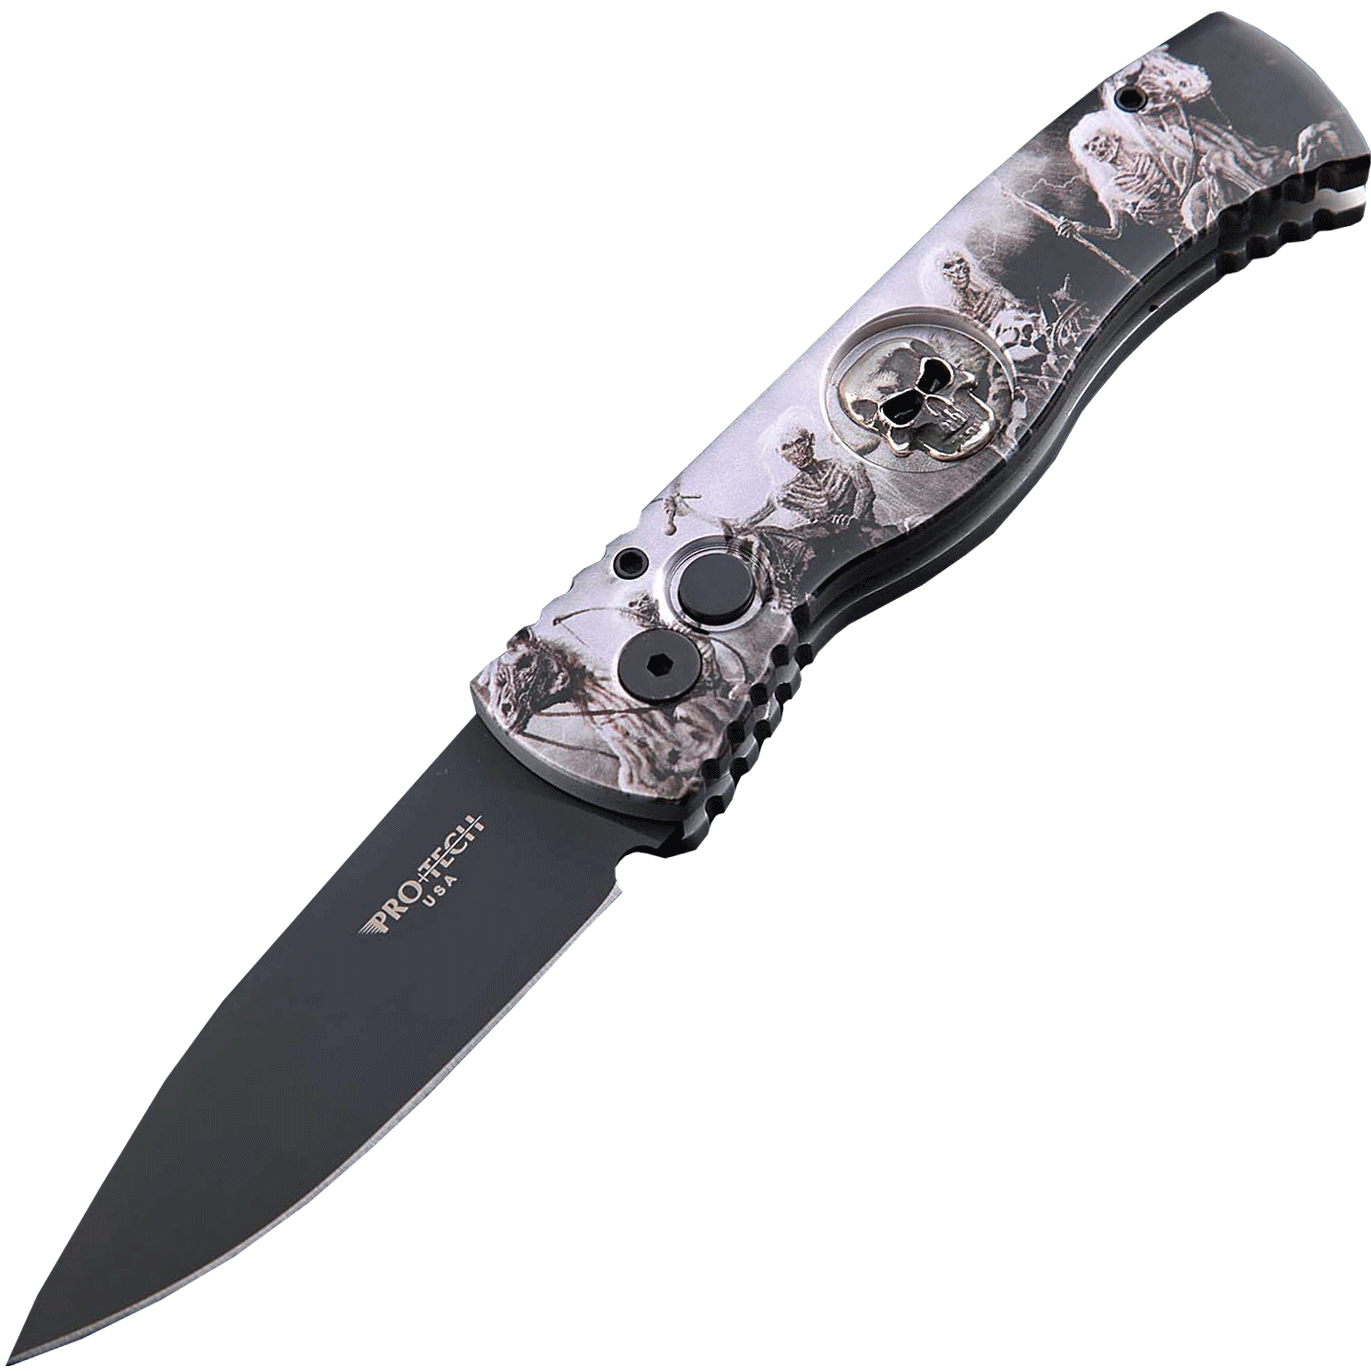 Автоматический складной нож Pro-Tech TR-2.4H1. Bruce Show Skull, клинок черный, сталь 154CM, рукоять алюминий, рисунок скелеты пиратов - фото 1